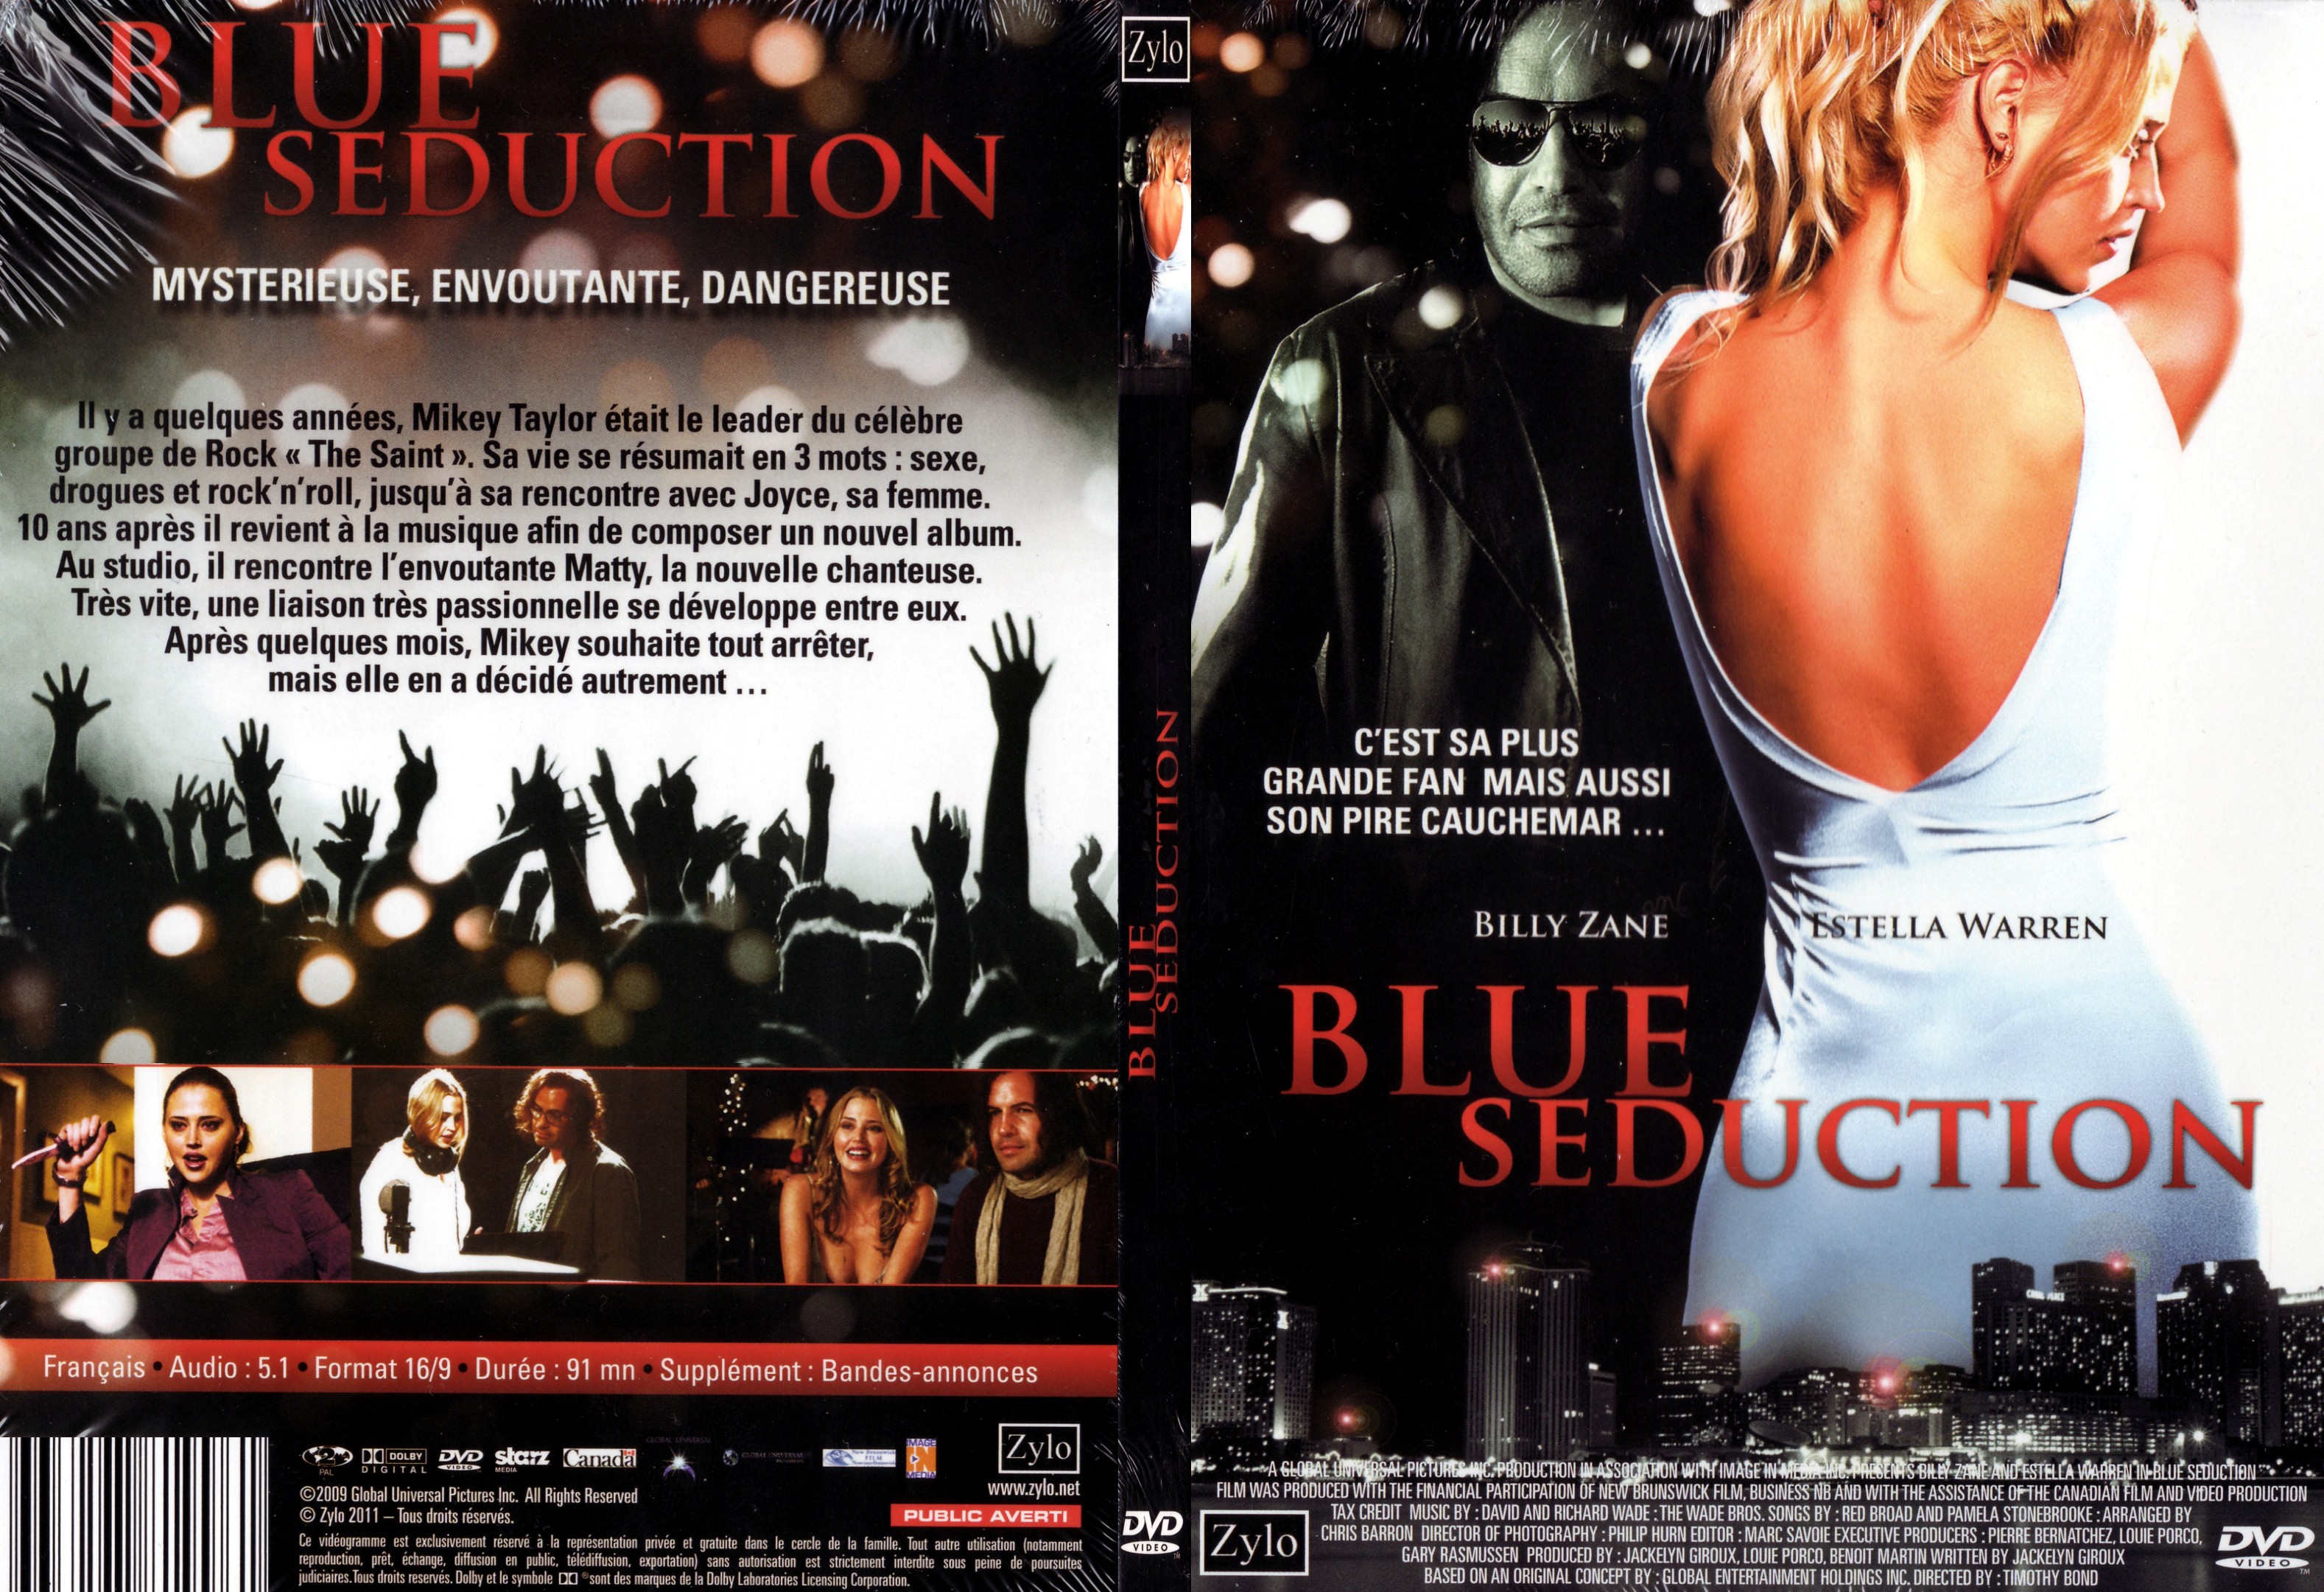 Jaquette DVD Blue seduction - SLIM